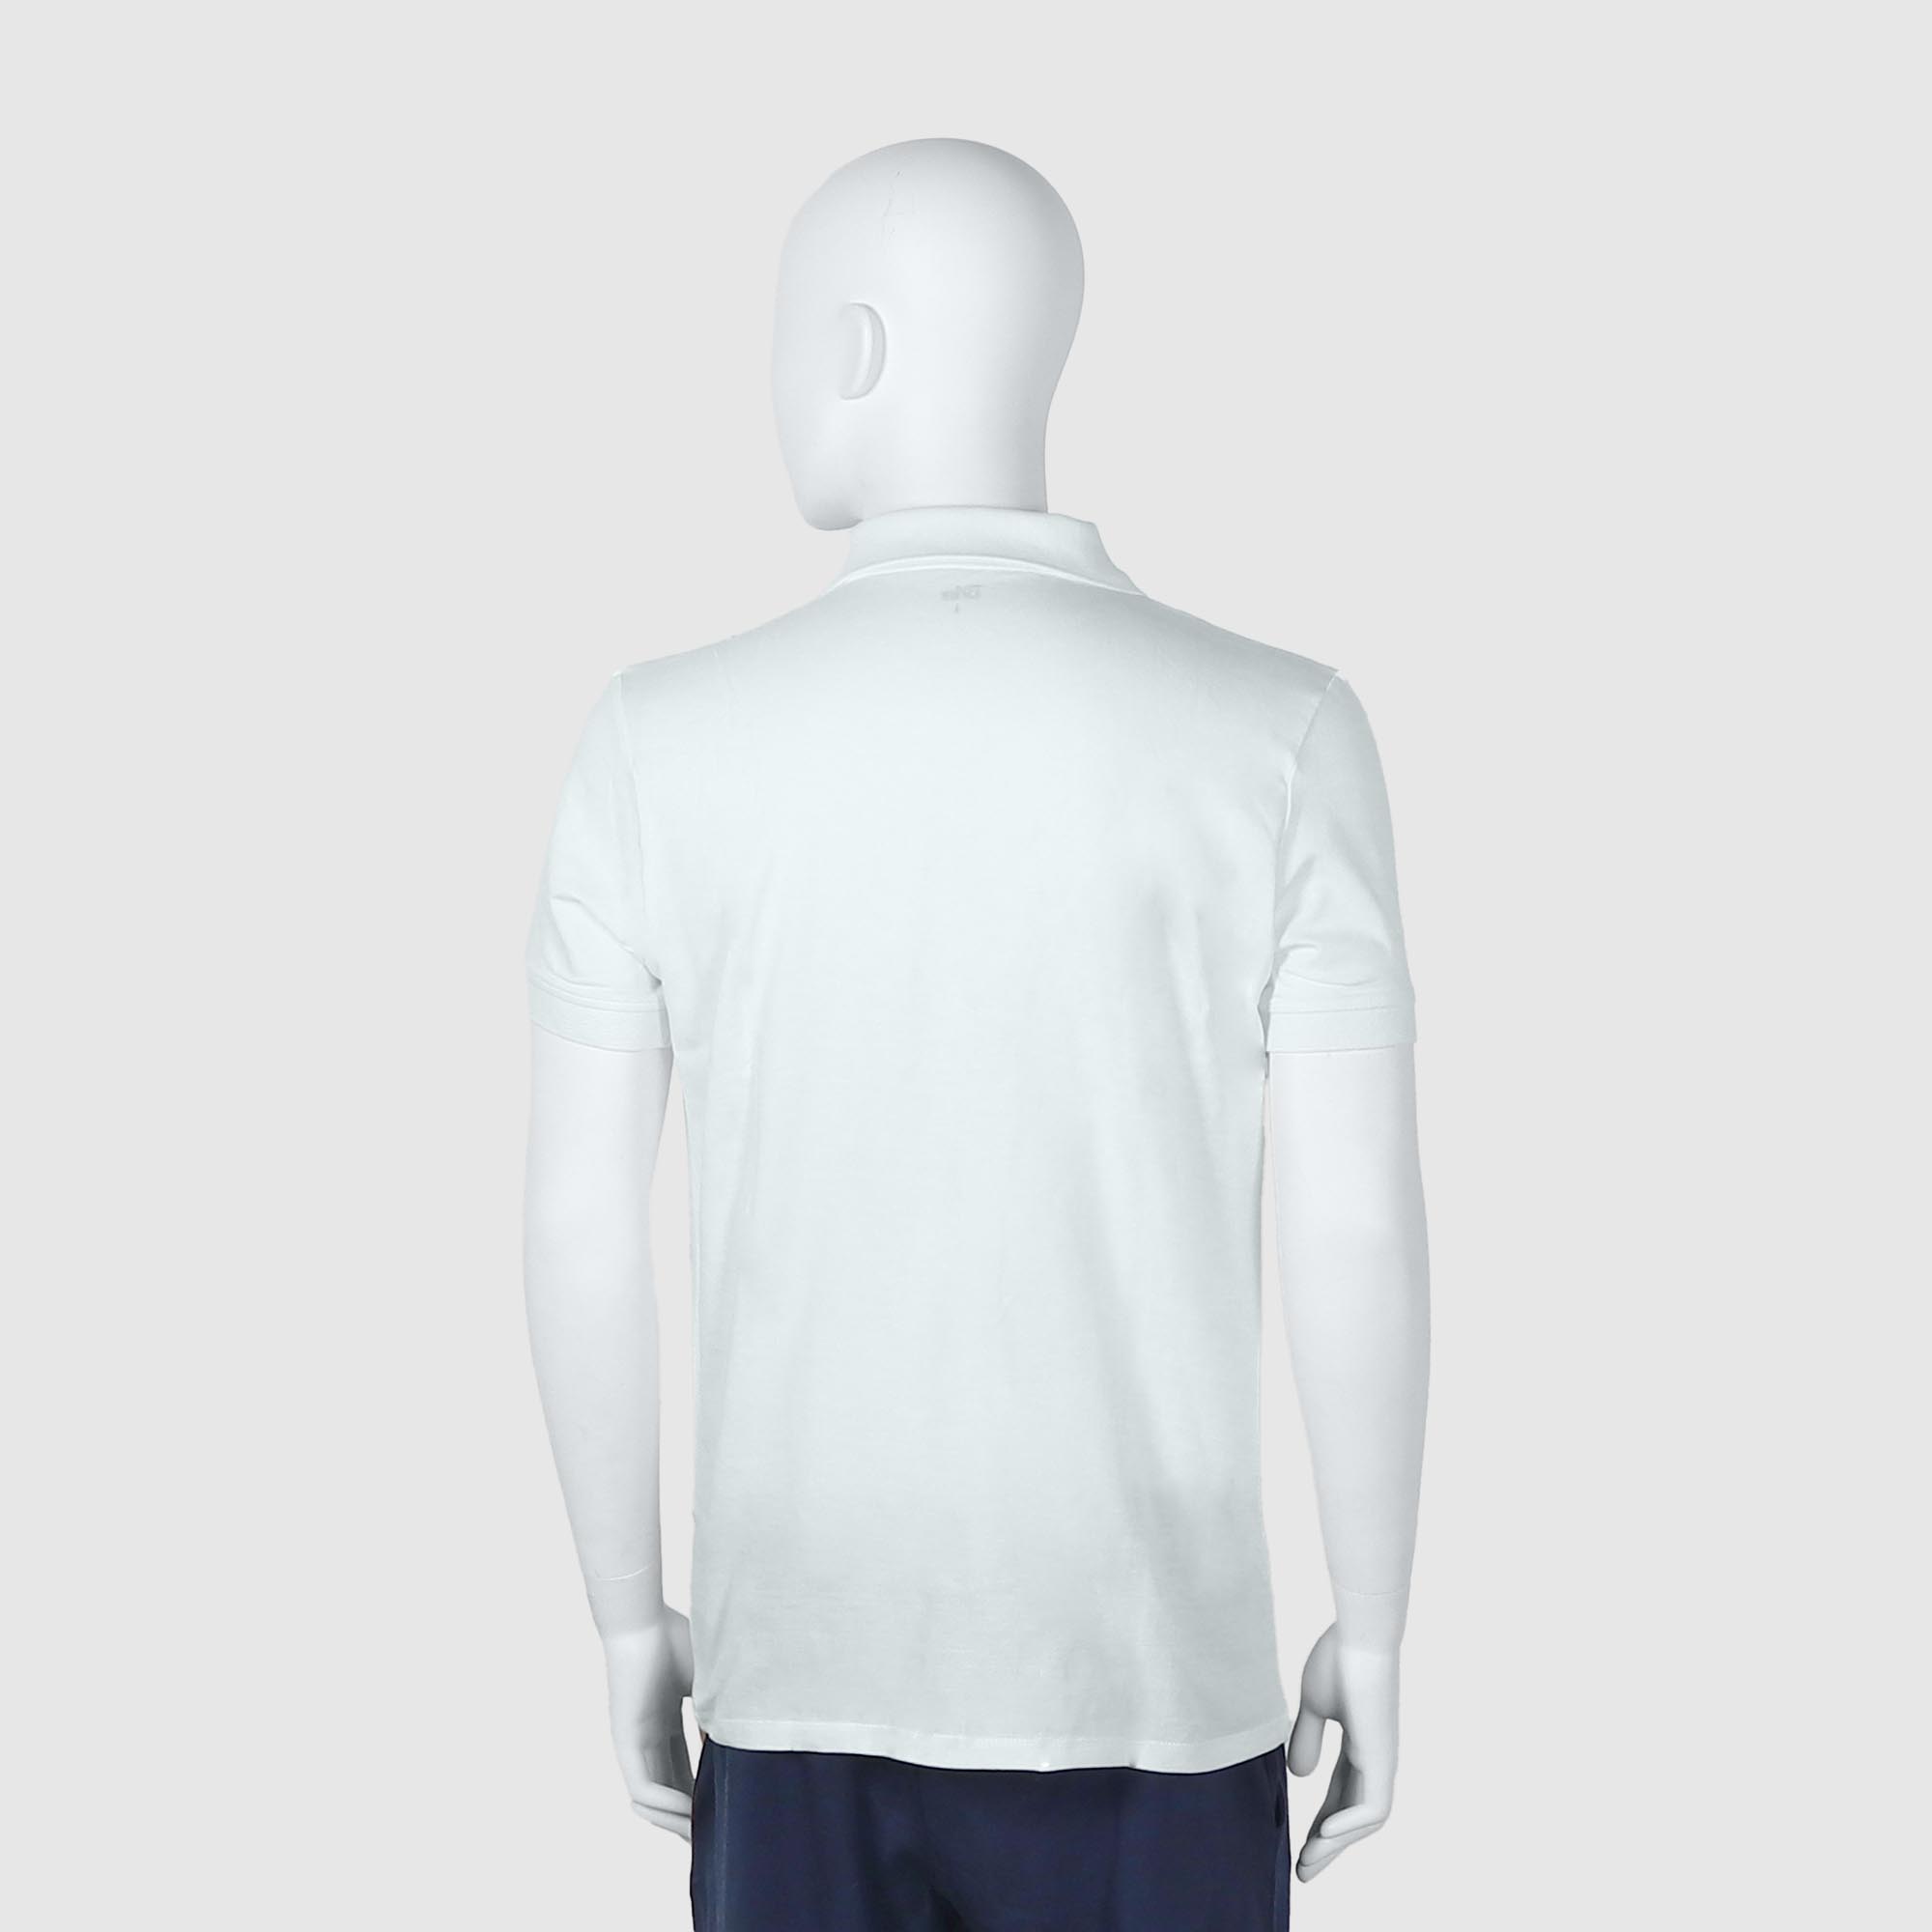 Мужская футболка-поло Diva Teks белая (DTD-07), цвет белый, размер 54-56 - фото 2